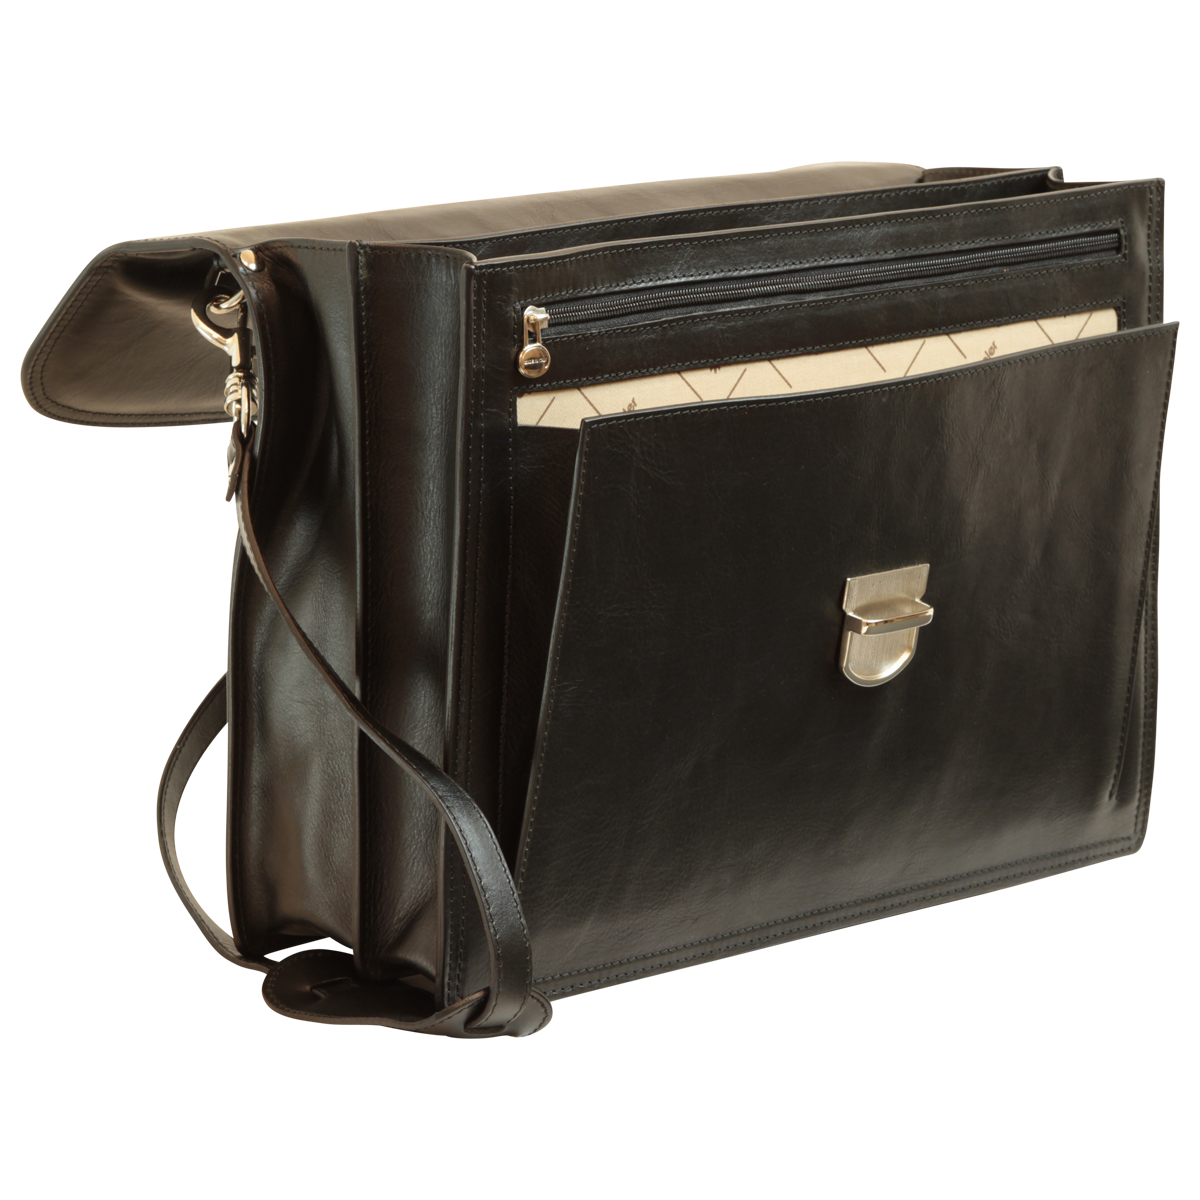 Briefcase with leather shoulder strap - Black | 201689NE US | Old Angler Firenze